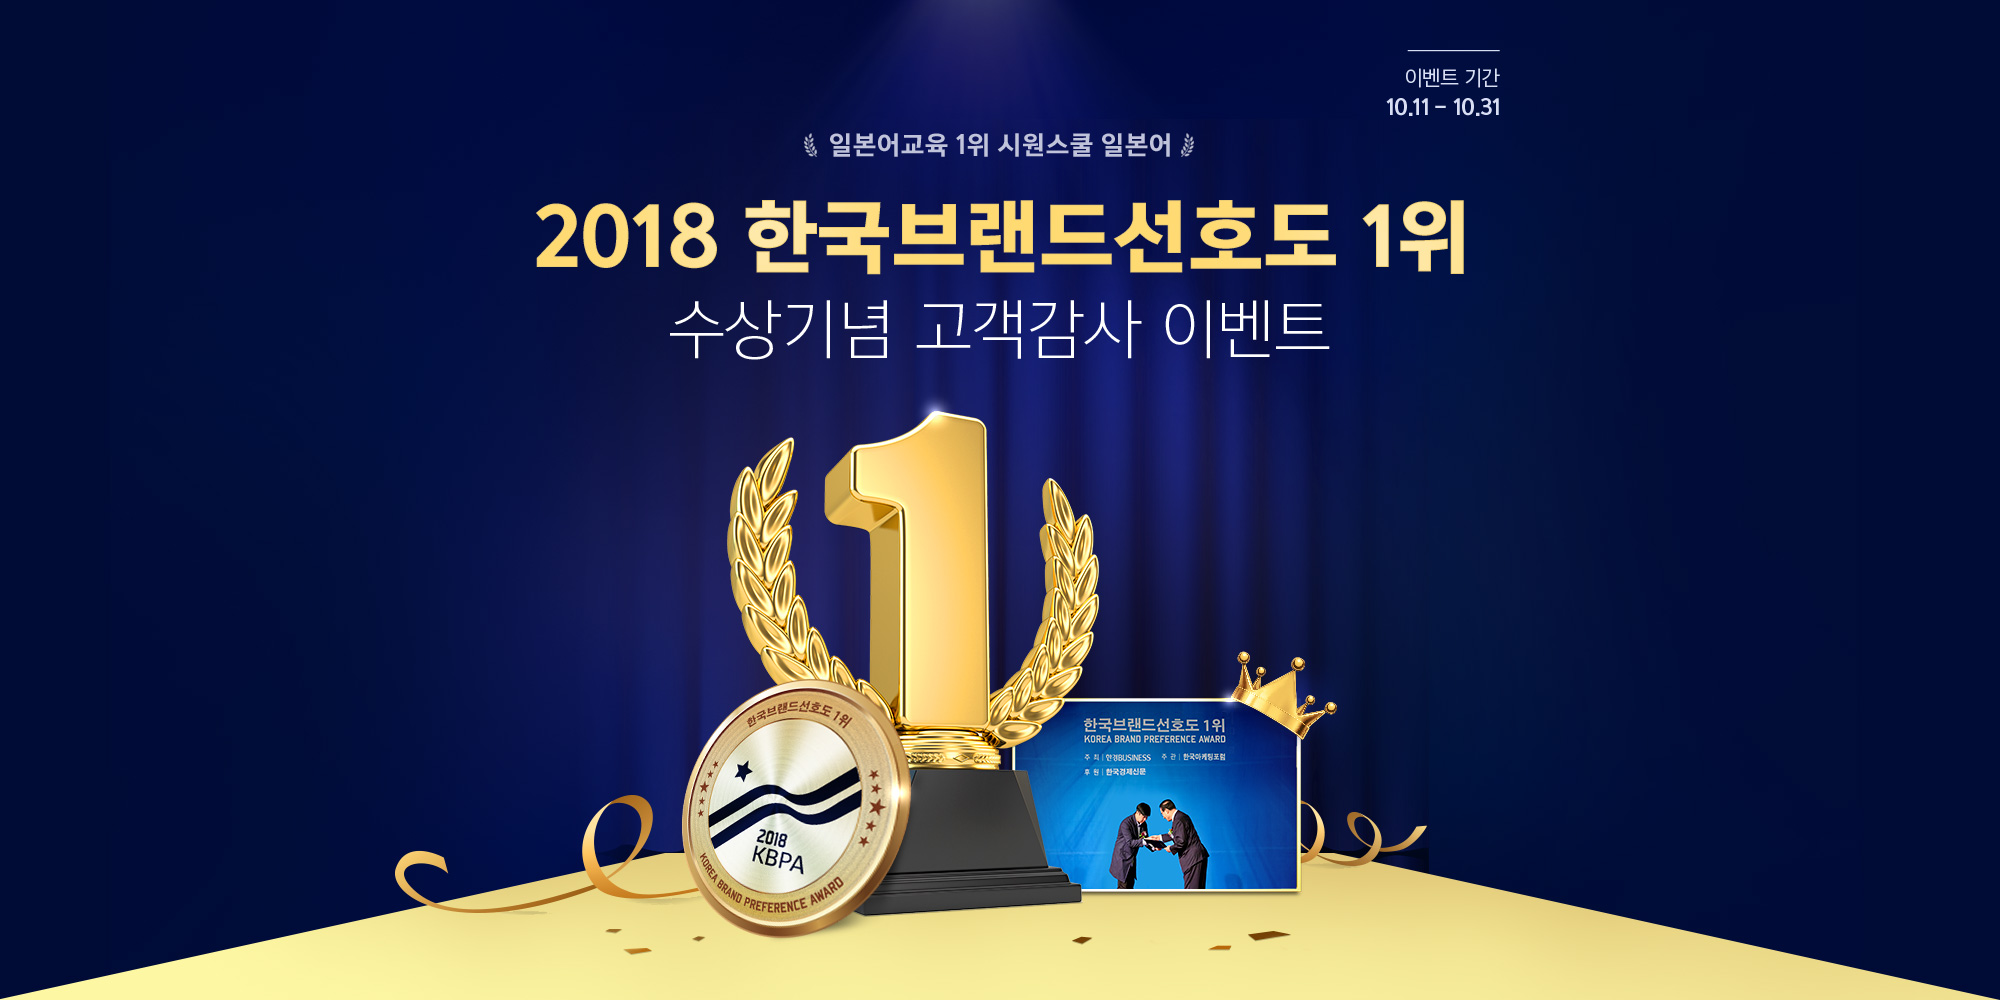 2018 한국브랜드선호도 1위 수상기념 고객감사 이벤트